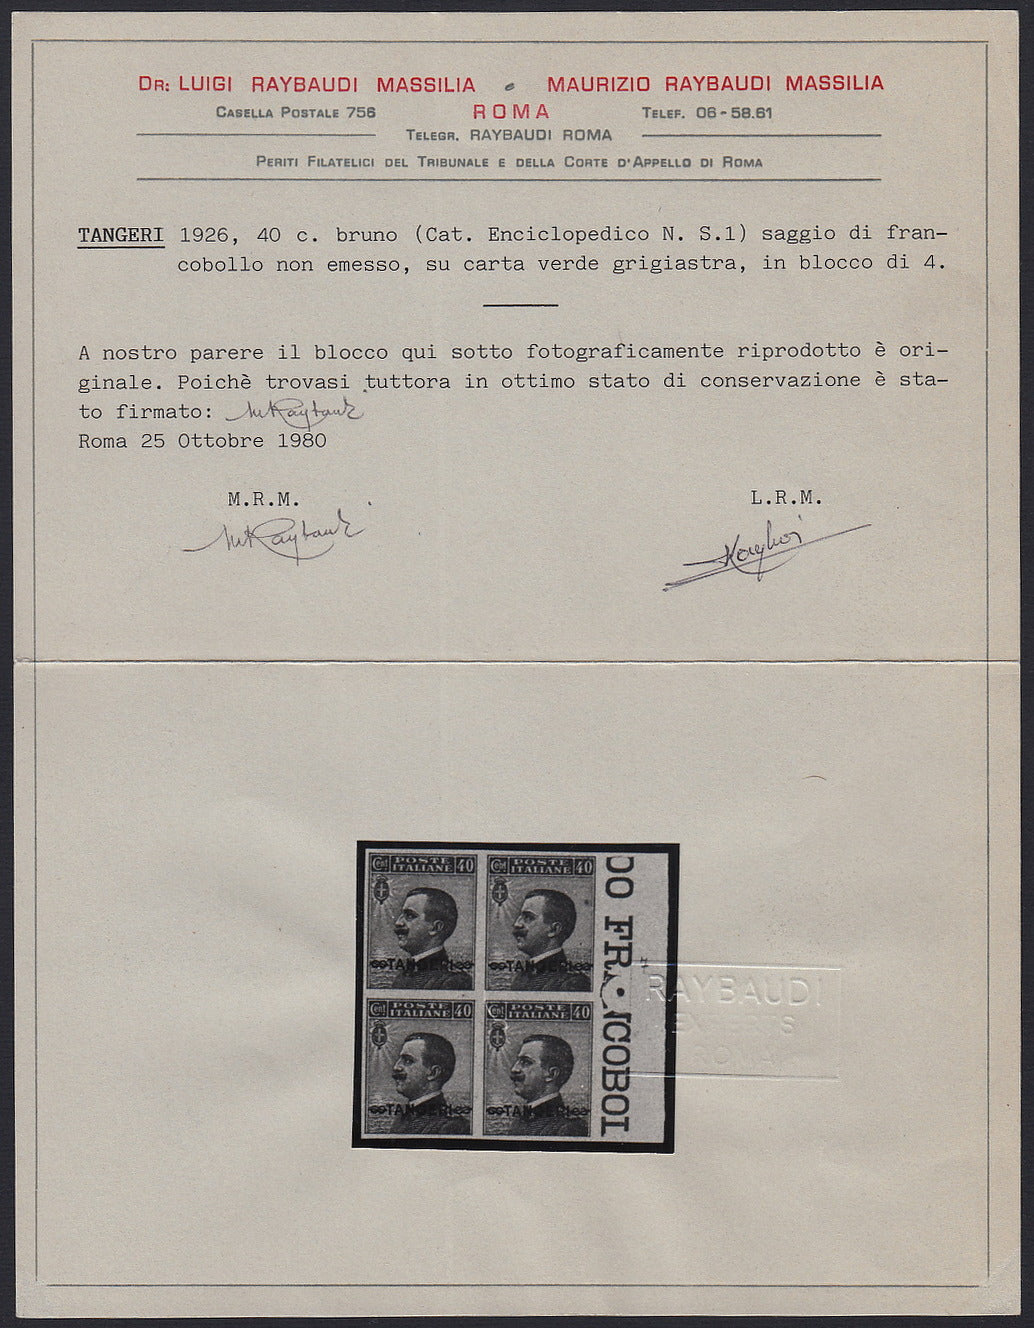 LevMar1 - 1926 - Marocco, francobollo d'Italia n. 84 soprastampato "TANGERI" tra due nodi di Savoia, blocco di quattro esemplari nuovo non gommato (S1)